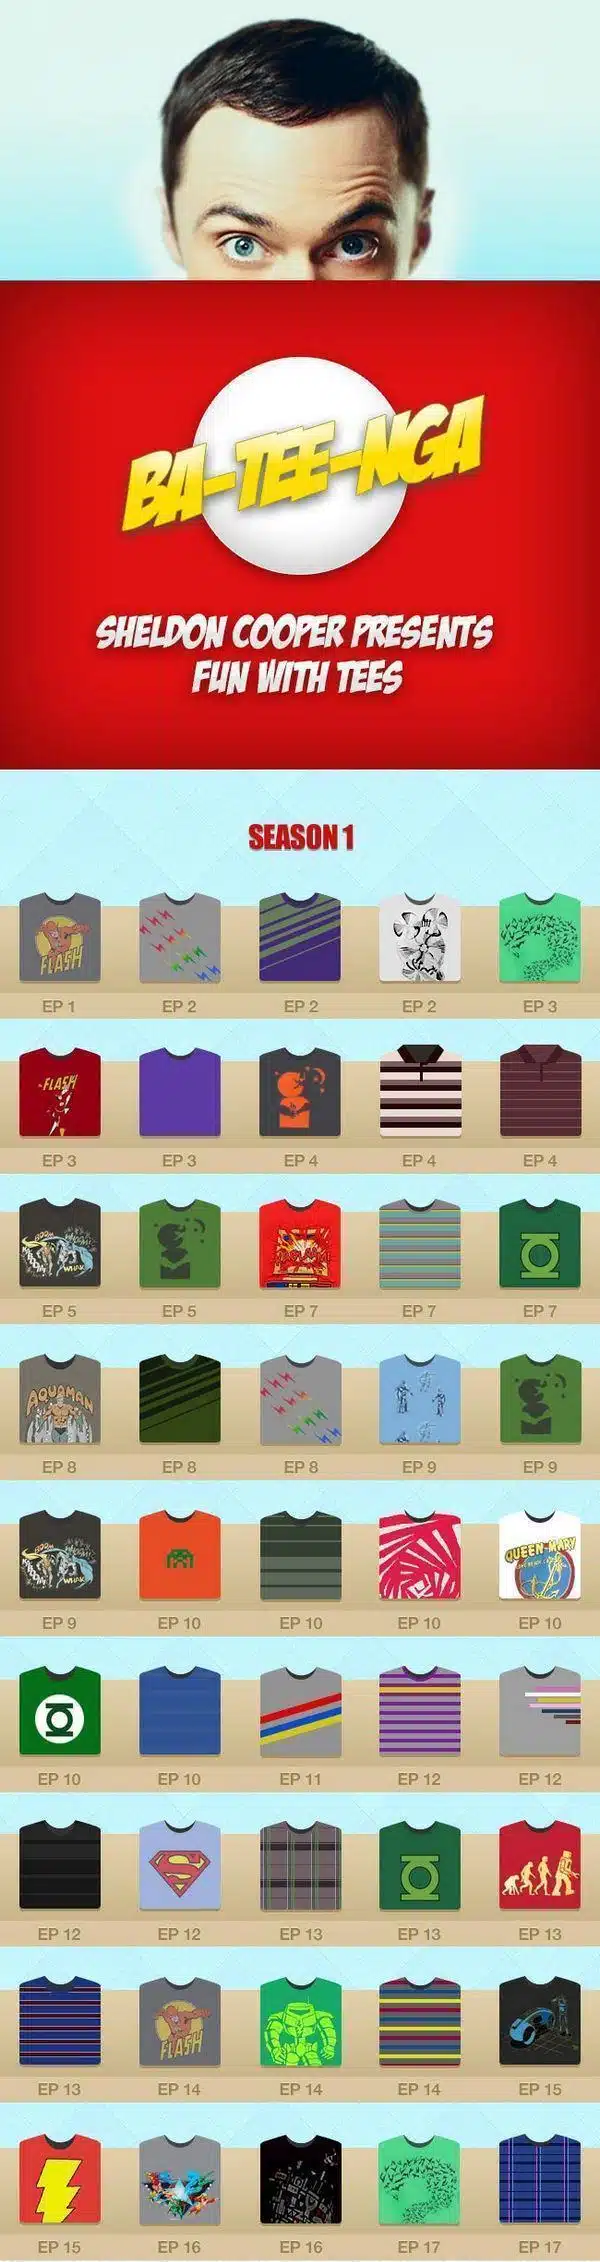 Todas as camisetas do Sheldon Cooper em The Big Bang Theory